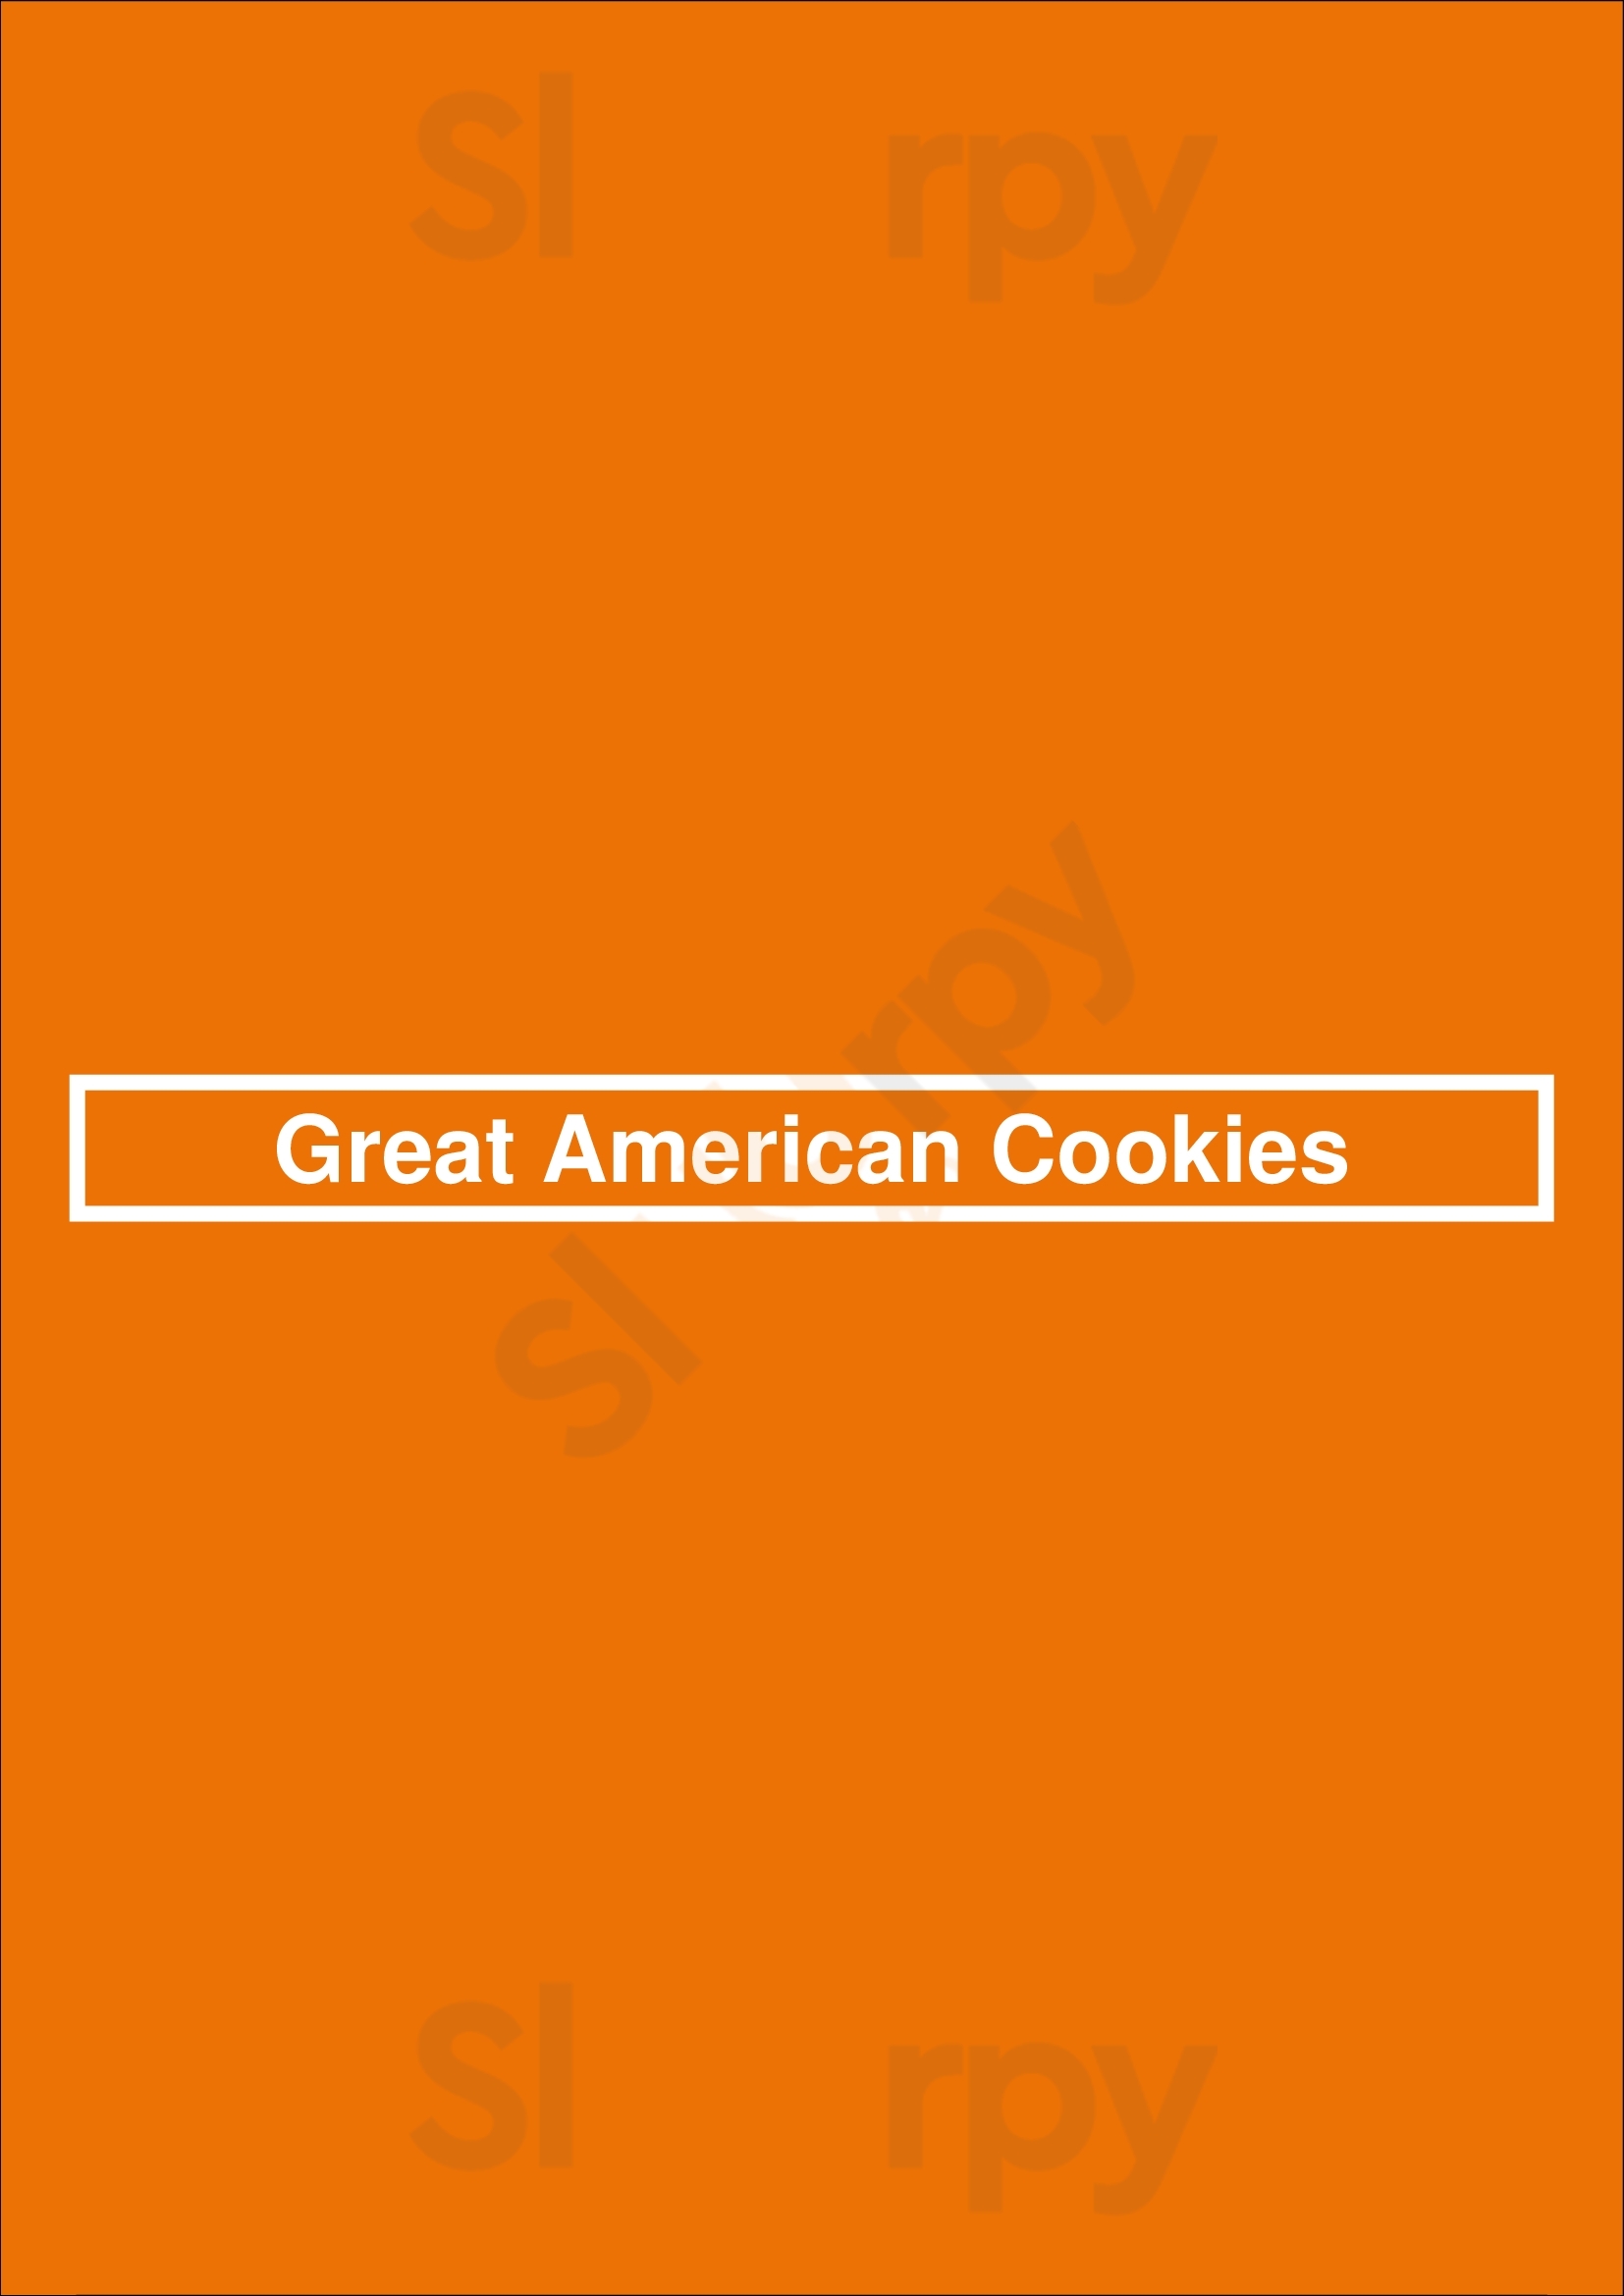 Great American Cookies Atlanta Menu - 1